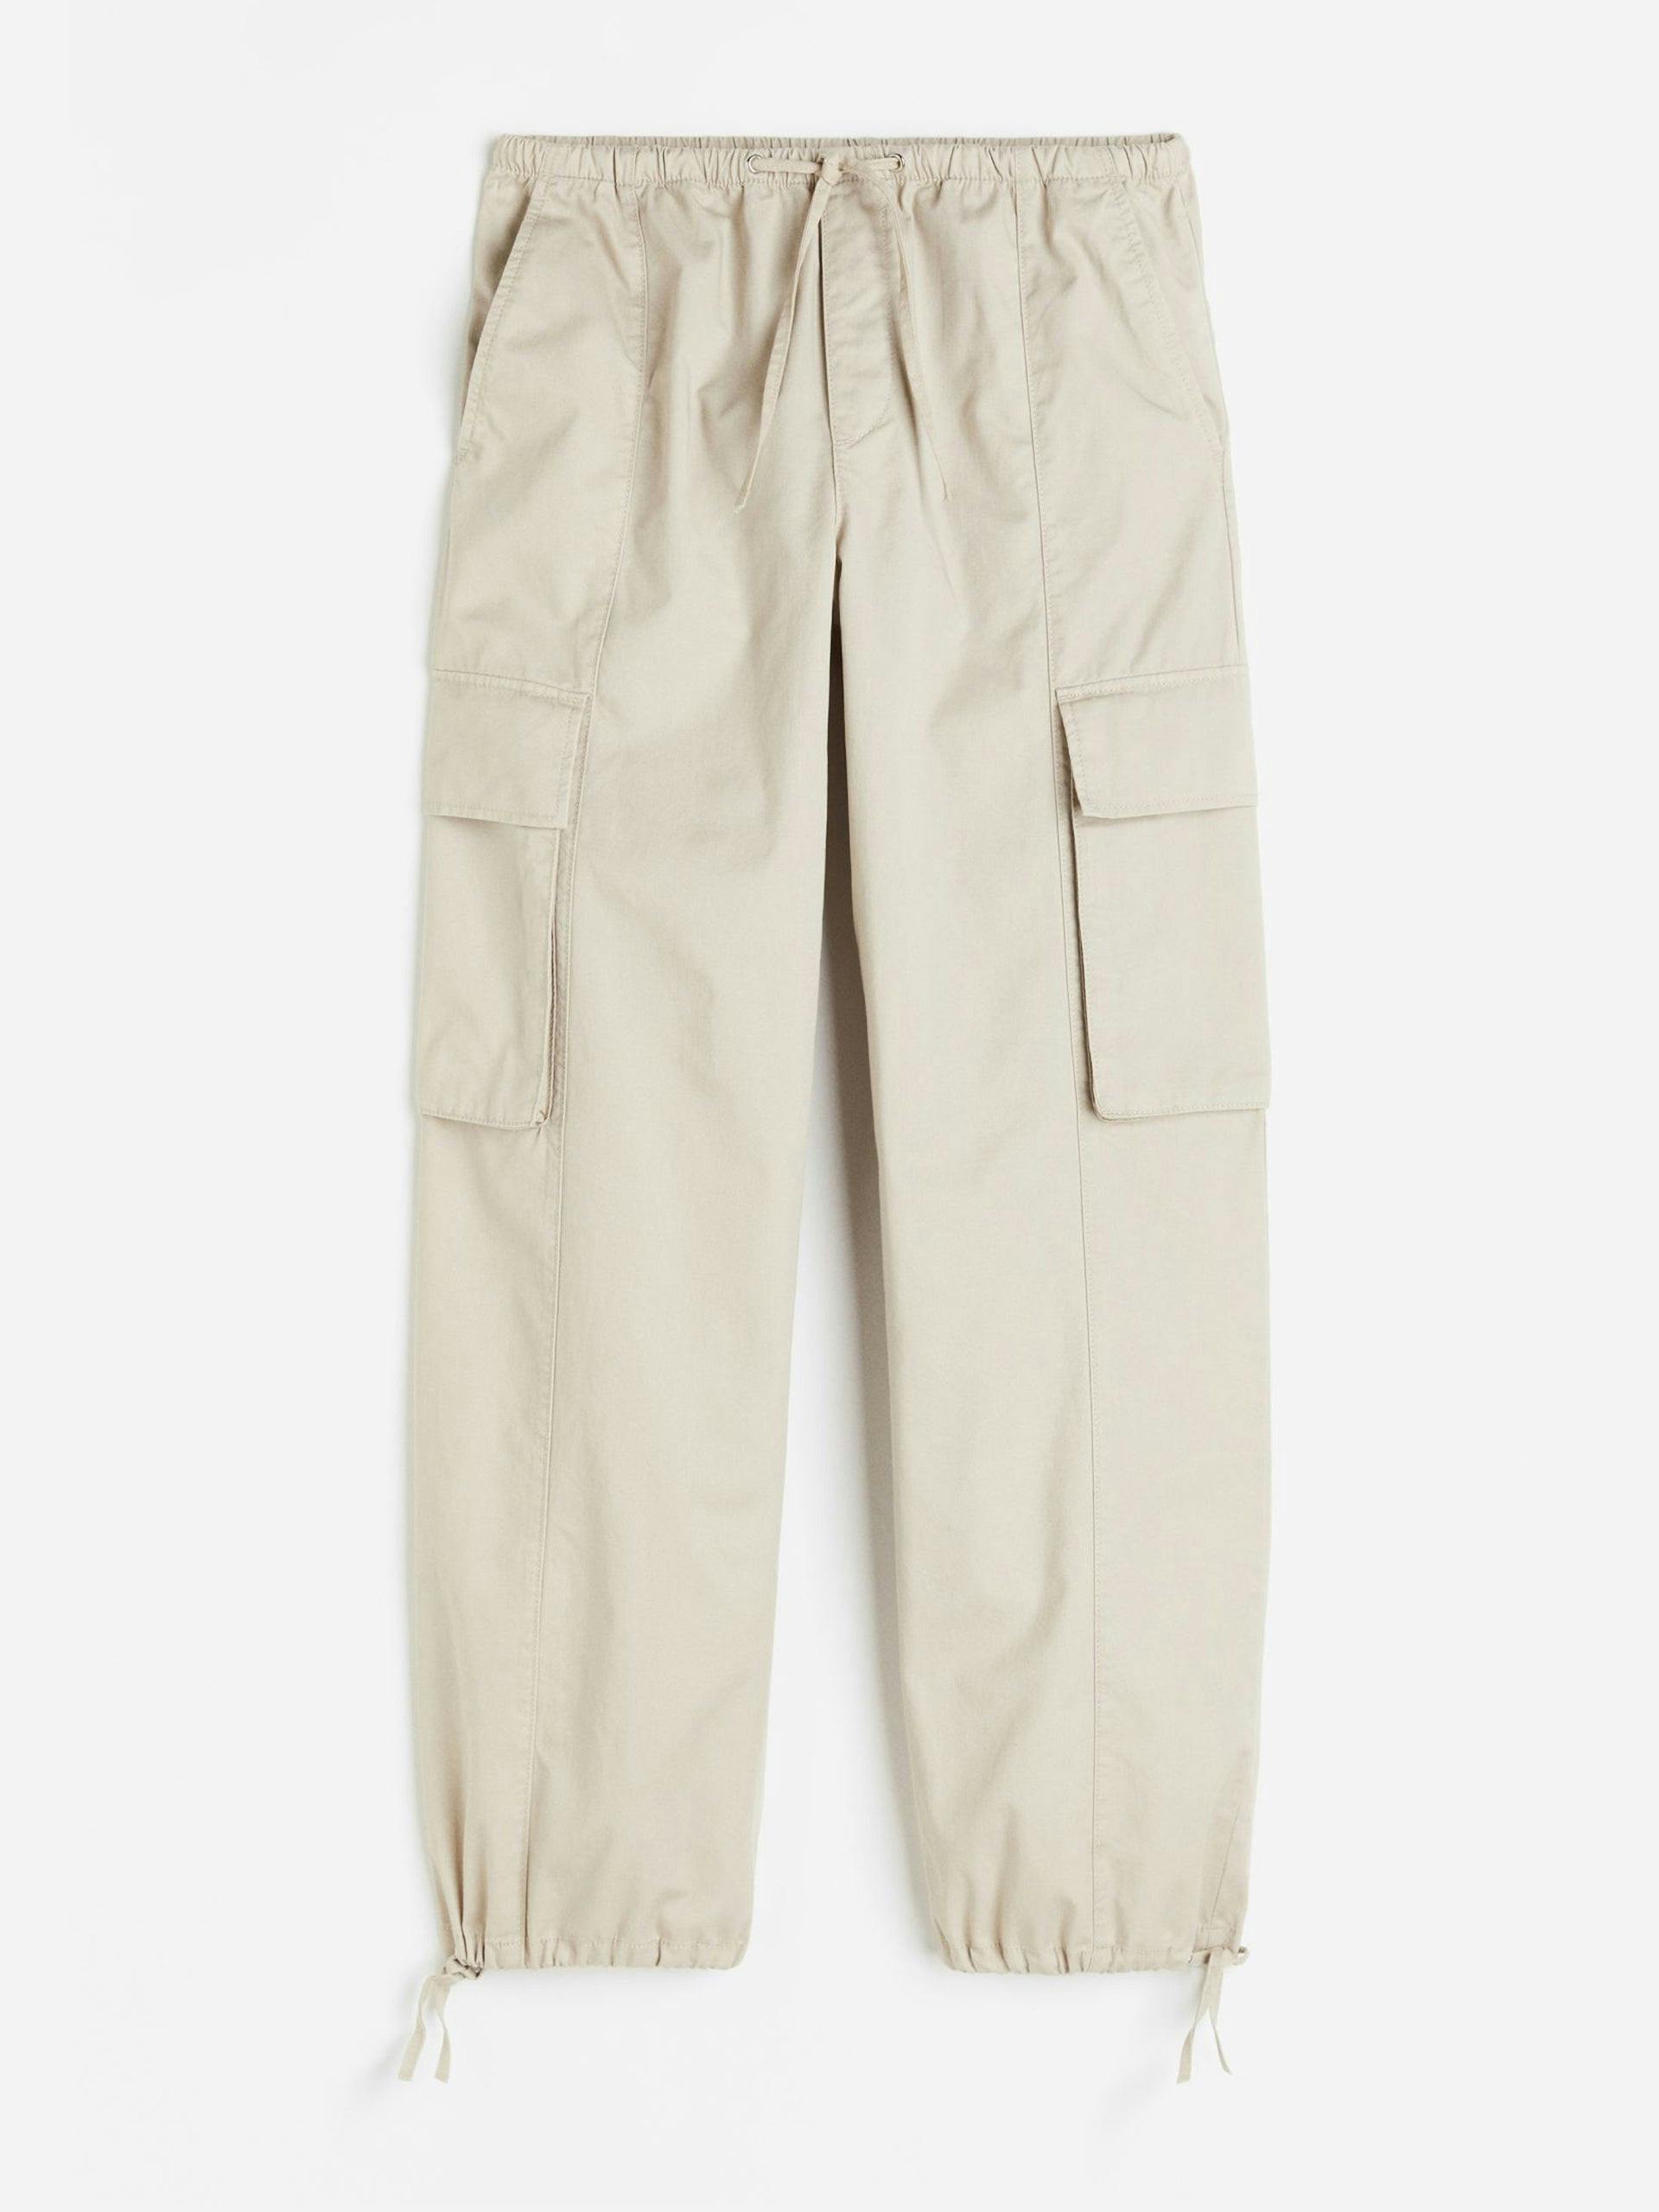 Light beige cargo trousers